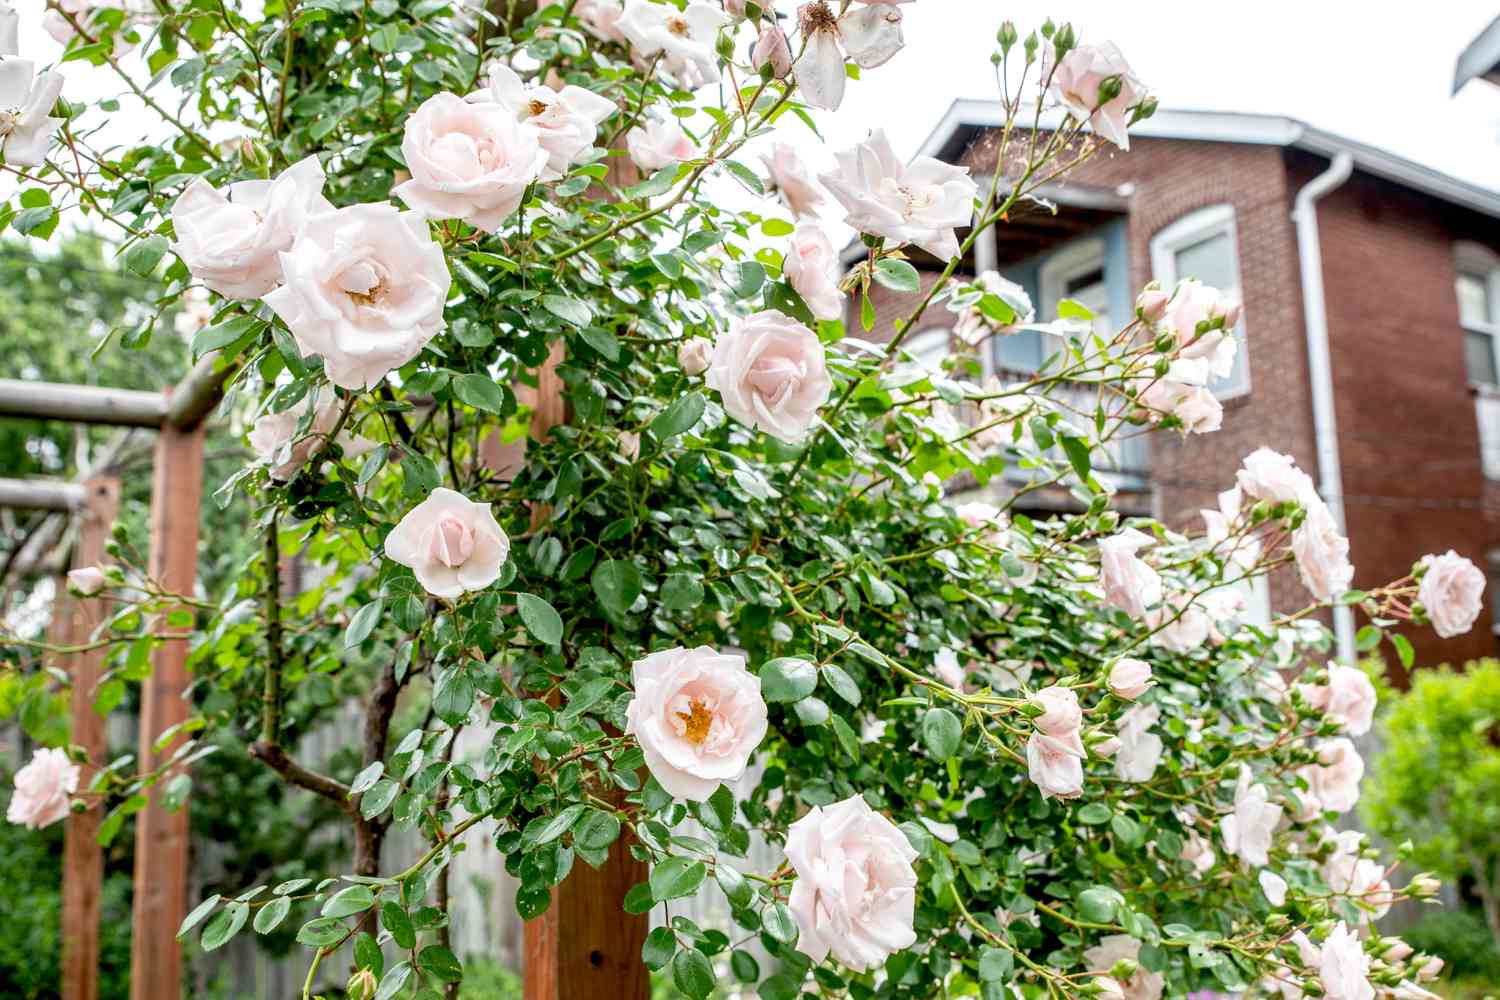 Hastes de rosas trepadeiras com grandes flores brancas presas a um suporte estrutural de madeira